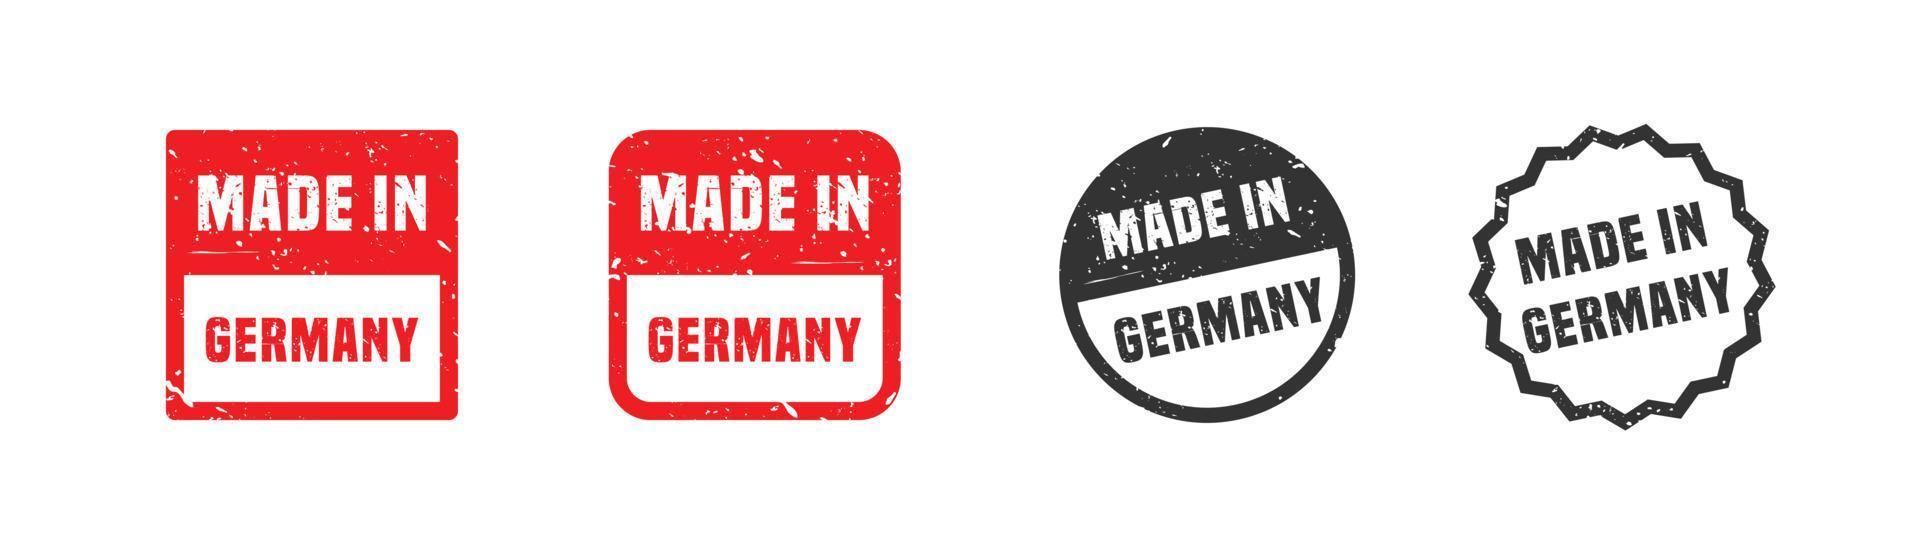 gemaakt in Duitsland postzegel rubber met grunge stijl Aan wit achtergrond. vector